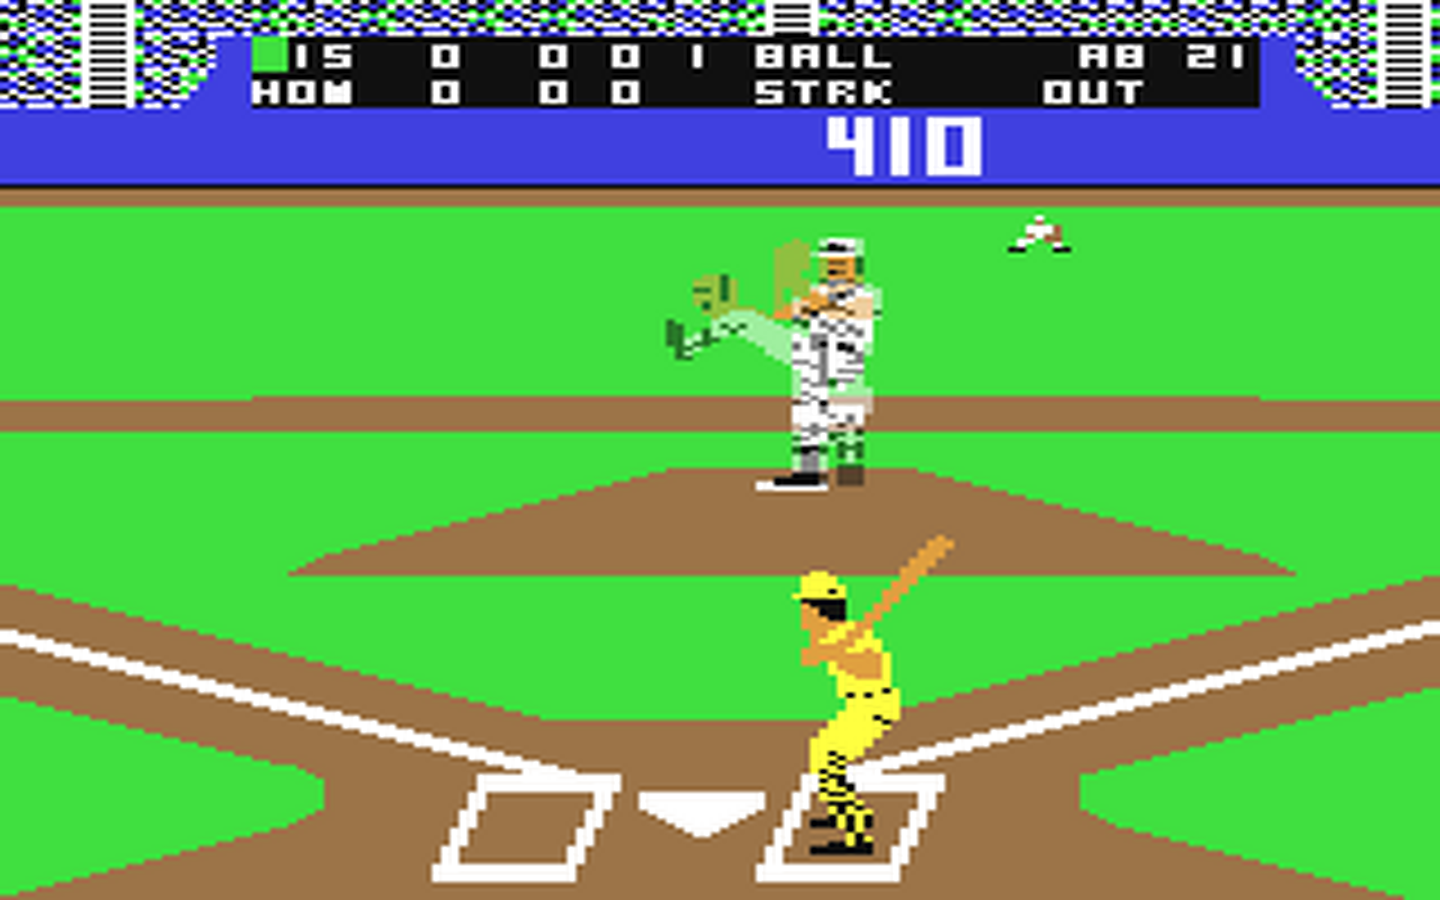 C64 GameBase Grand_Slam_Baseball_-_Steve_Garvey_vs._Jose_Canseco Cosmi 1987